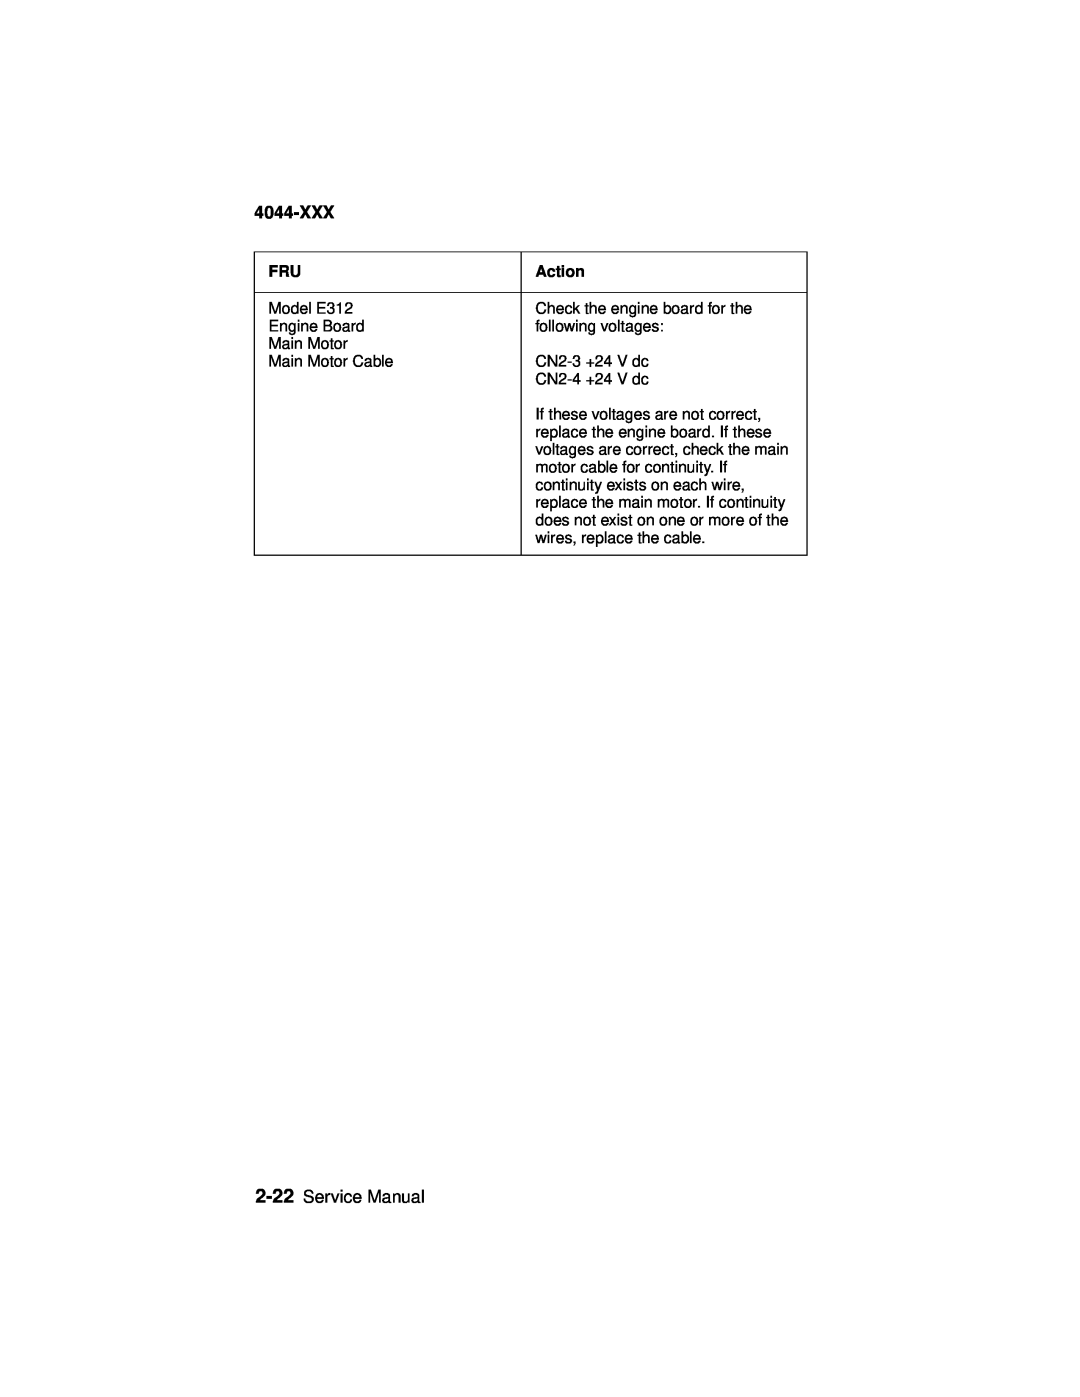 Lexmark 4044-XXX, E310 manual Service Manual, Action 